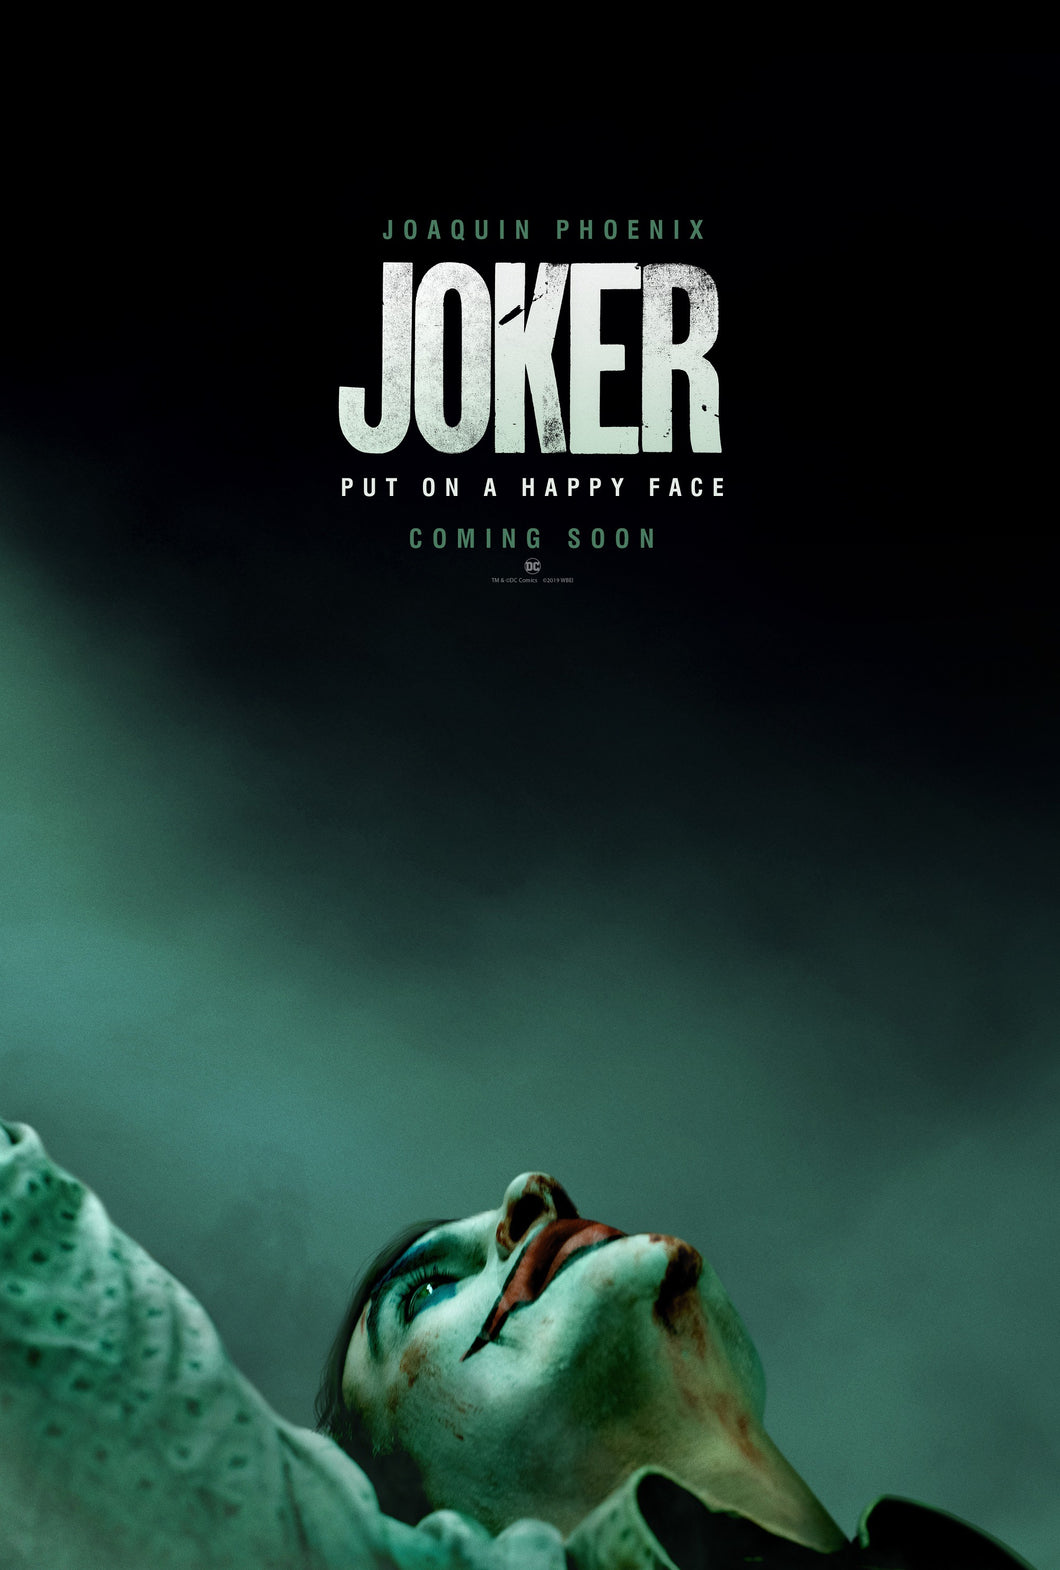 The Joker - Coming Soon Poster - egoamo.co.za